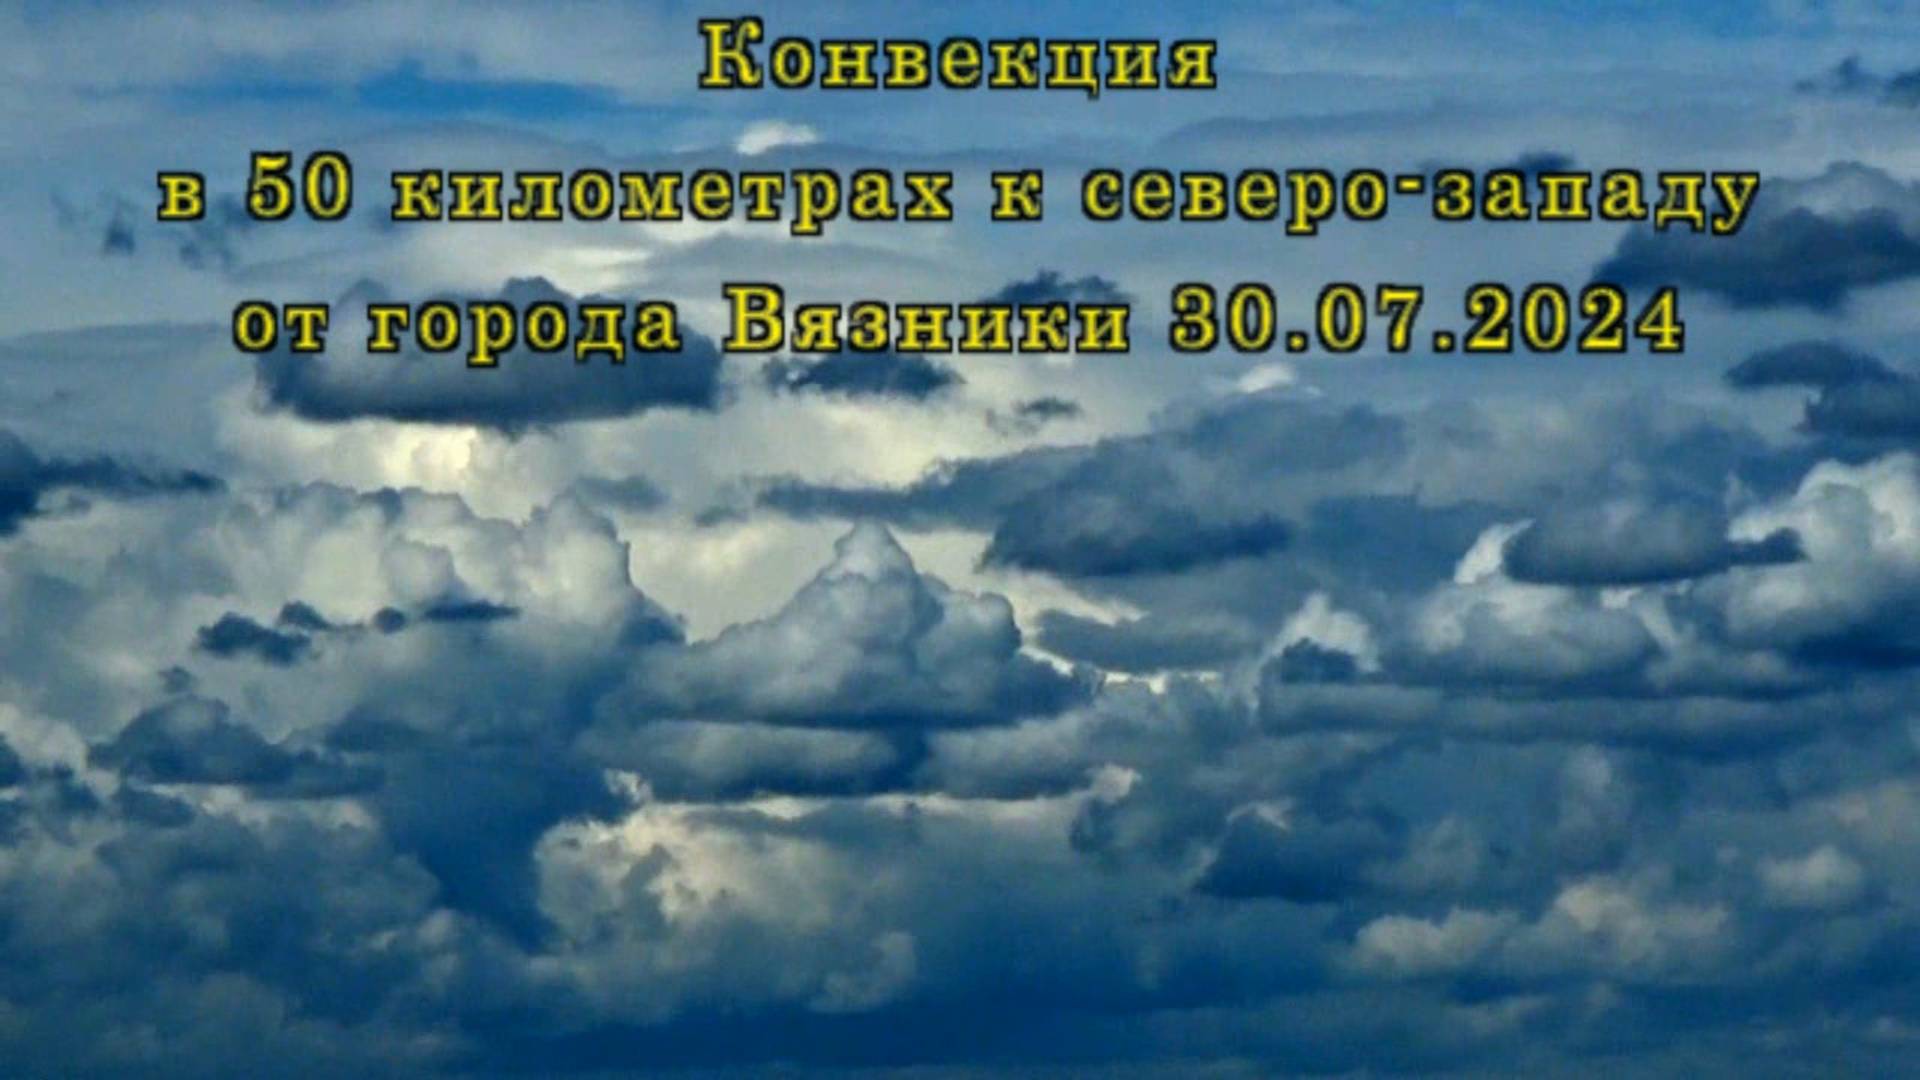 Конвекция в 50 километрах к северо-западу от города Вязники 30.07.2024